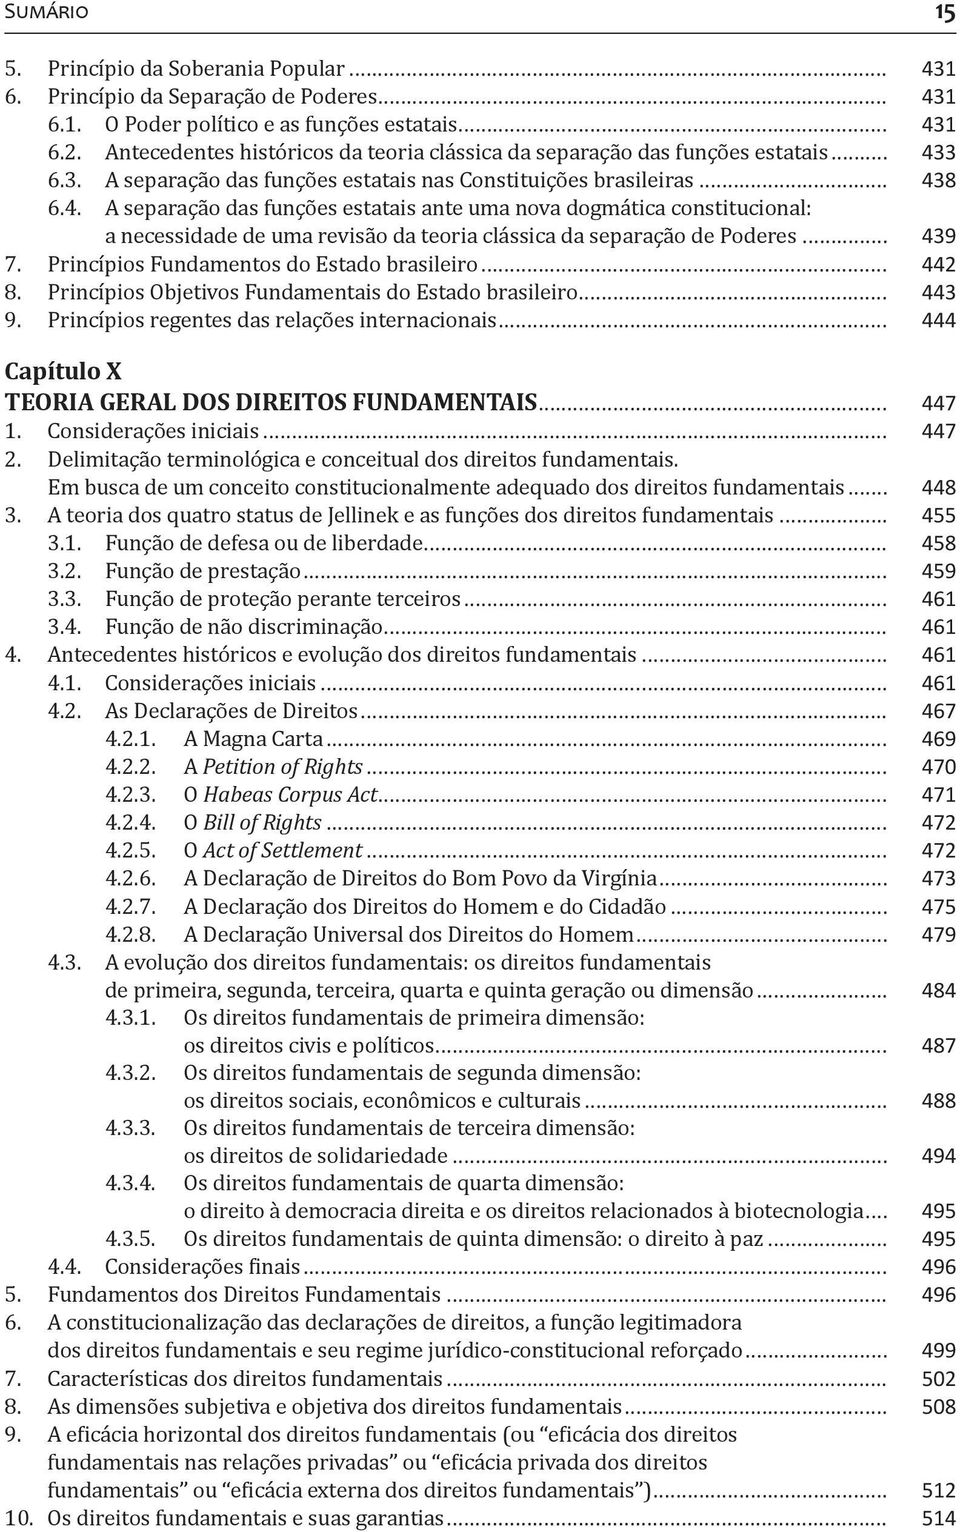 3 6.3. A separação das funções estatais nas Constituições brasileiras... 43